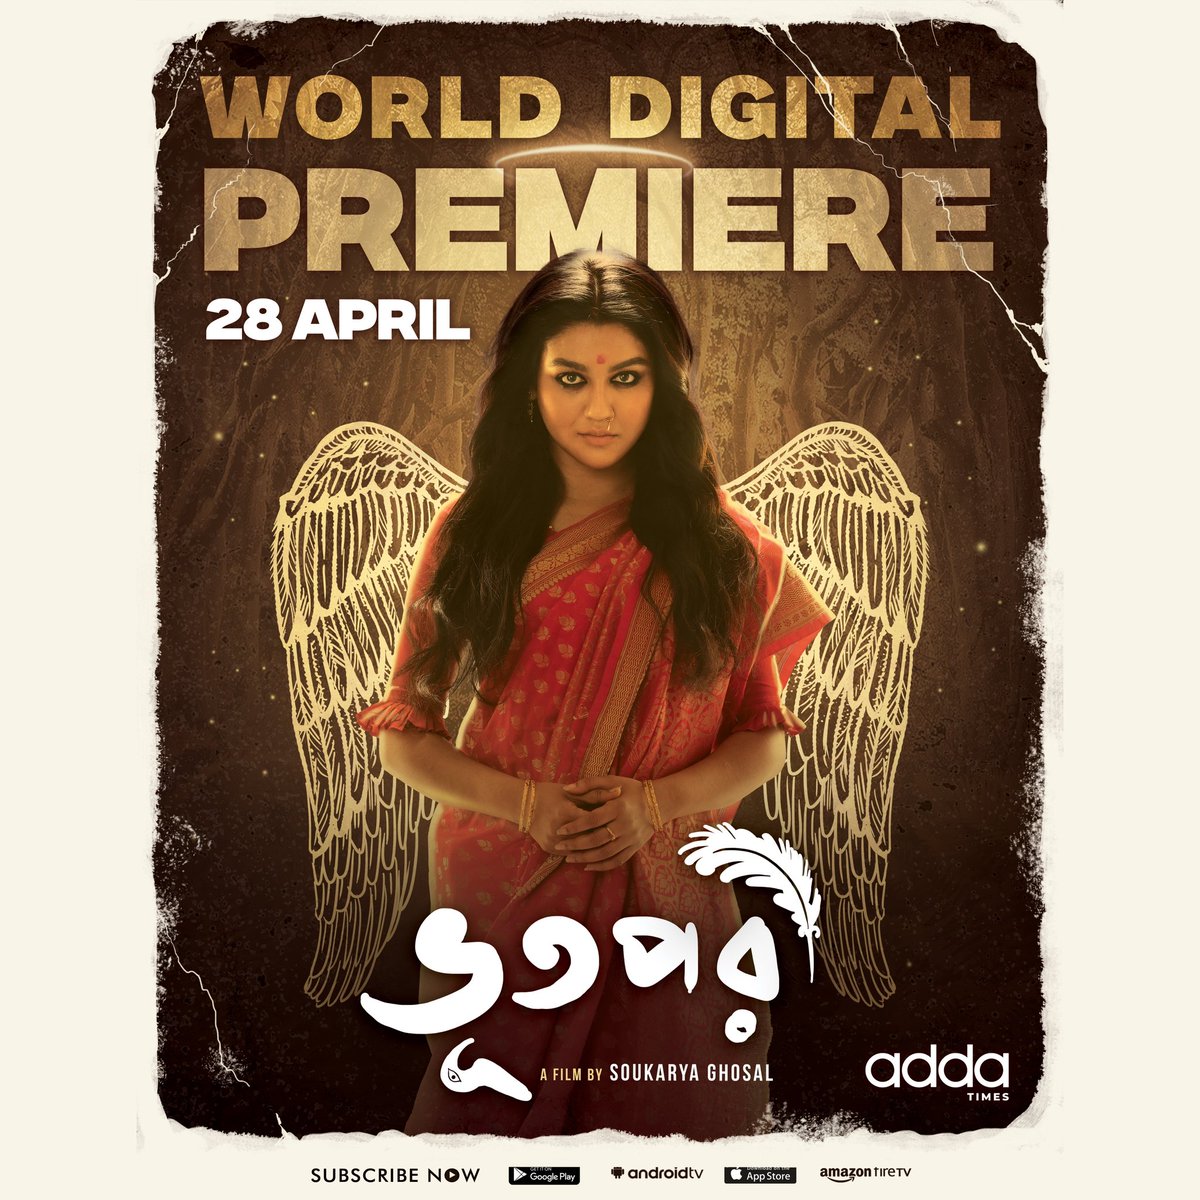 মানুষ মরে ভূত হলে, ভূত মরে কি পরী হয়?

অপেক্ষার অবসান… 
World Digital Premiere on 28 April.
“ভূতপরী” আসছে #Addatimes-এ!

#Bhootpori | #JayaAhsan | #SoukaryaGhosal | #BhootMorePoriHoi | @addatimes | @SurinderFilms | #AddaEkhonJomjomat

#SDFilmyNews